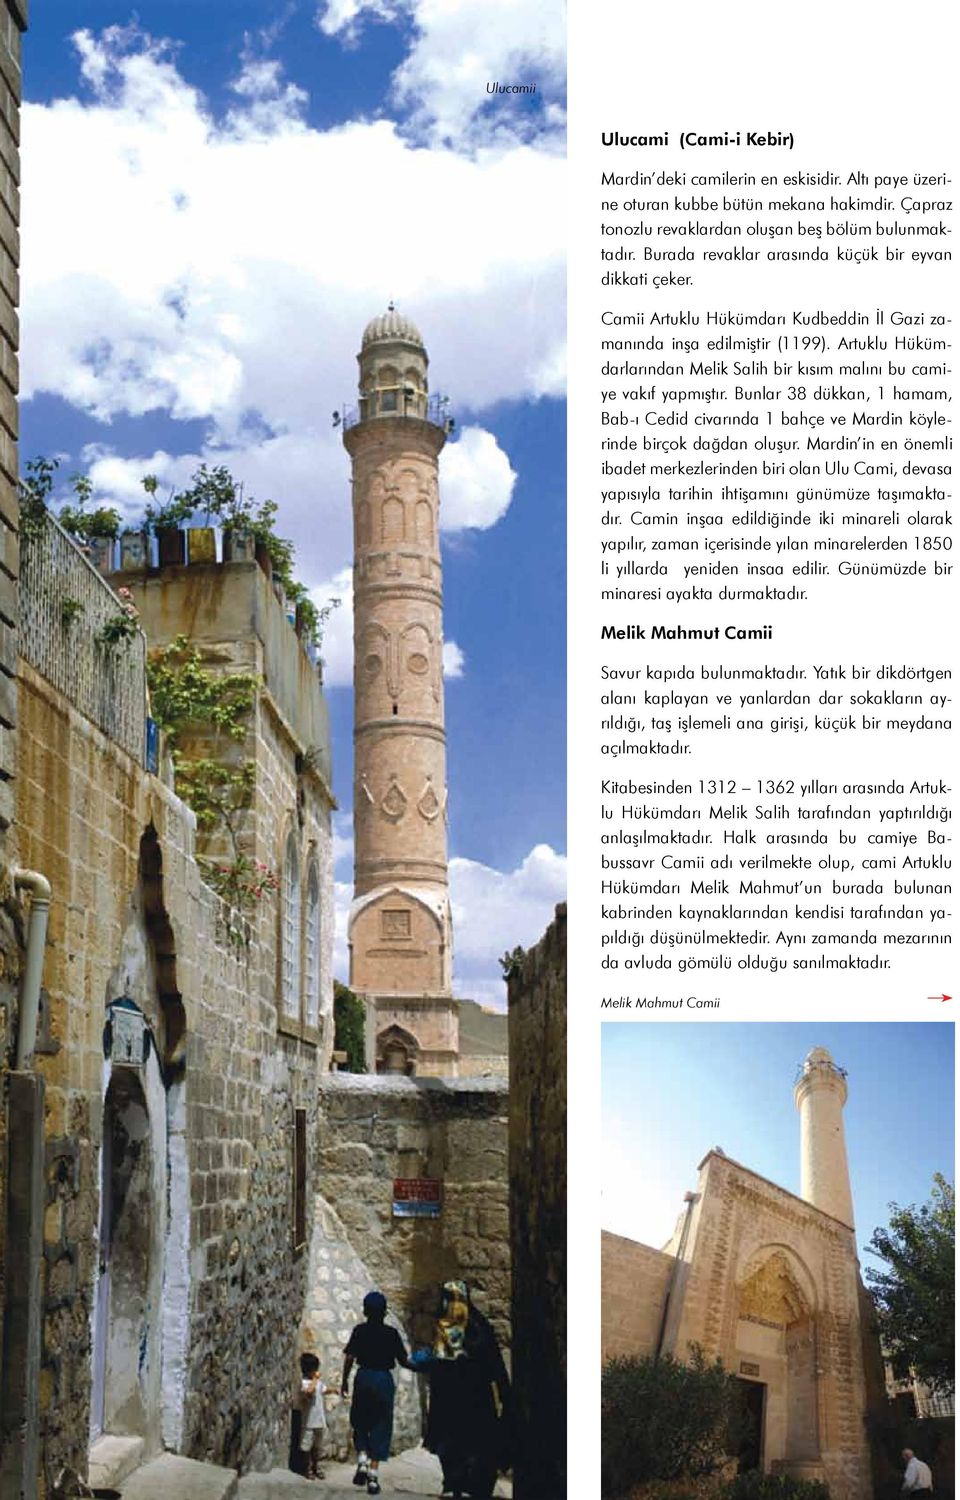 Artuklu Hükümdarlarından Melik Salih bir kısım malını bu camiye vakıf yapmıştır. Bunlar 38 dükkan, 1 hamam, Bab-ı Cedid civarında 1 bahçe ve Mardin köylerinde birçok dağdan oluşur.